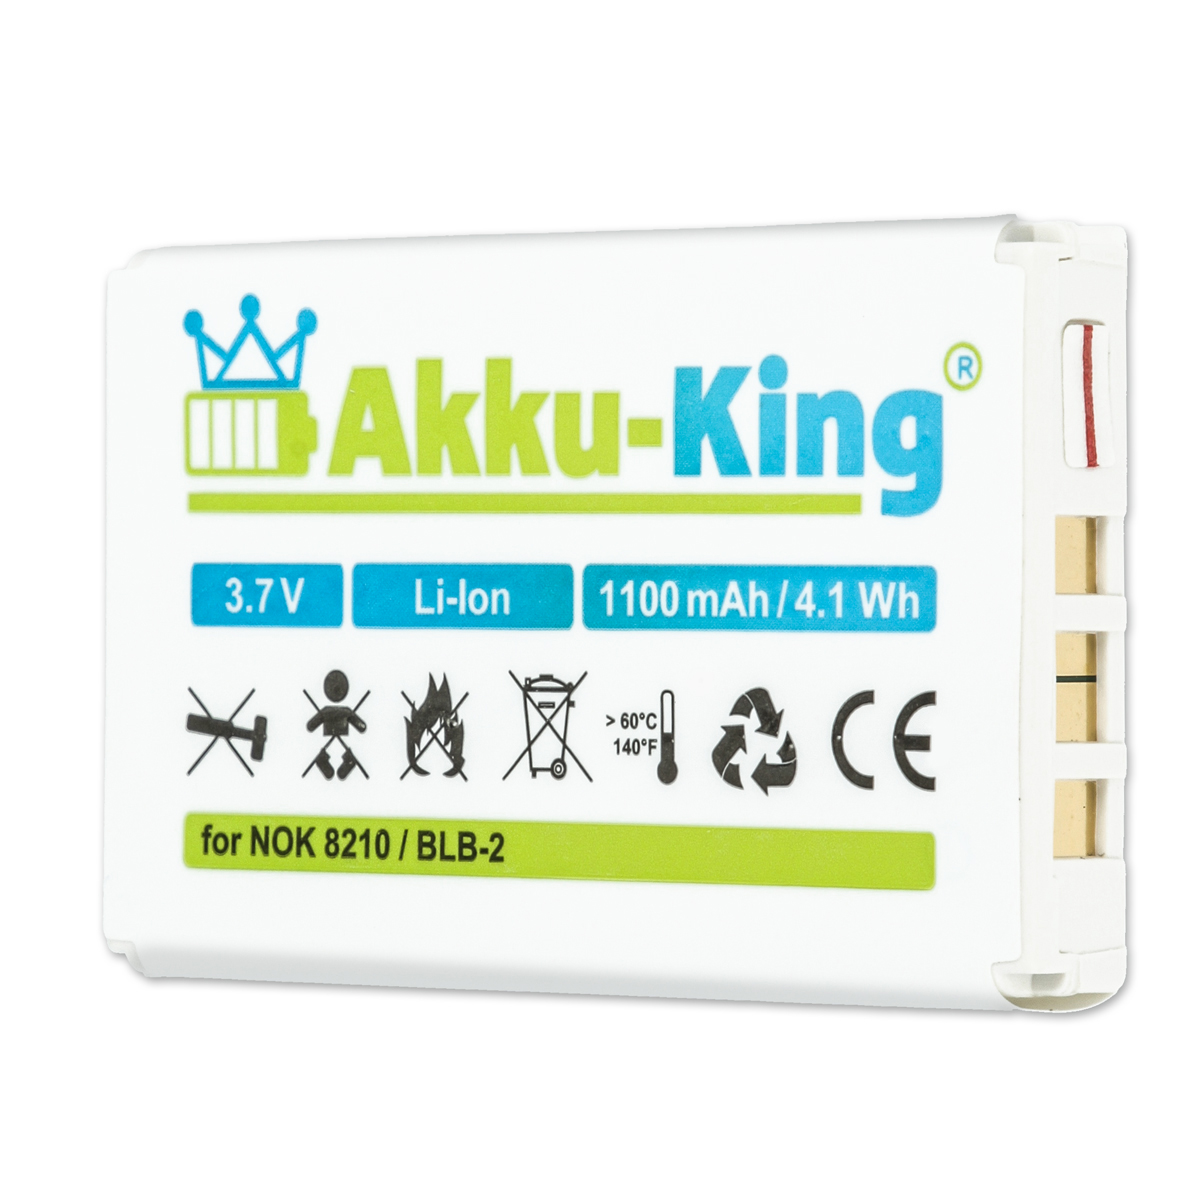 kompatibel 3.7 Li-Ion 1100mAh mit Volt, Akku AKKU-KING Handy-Akku, Nokia BLB-2